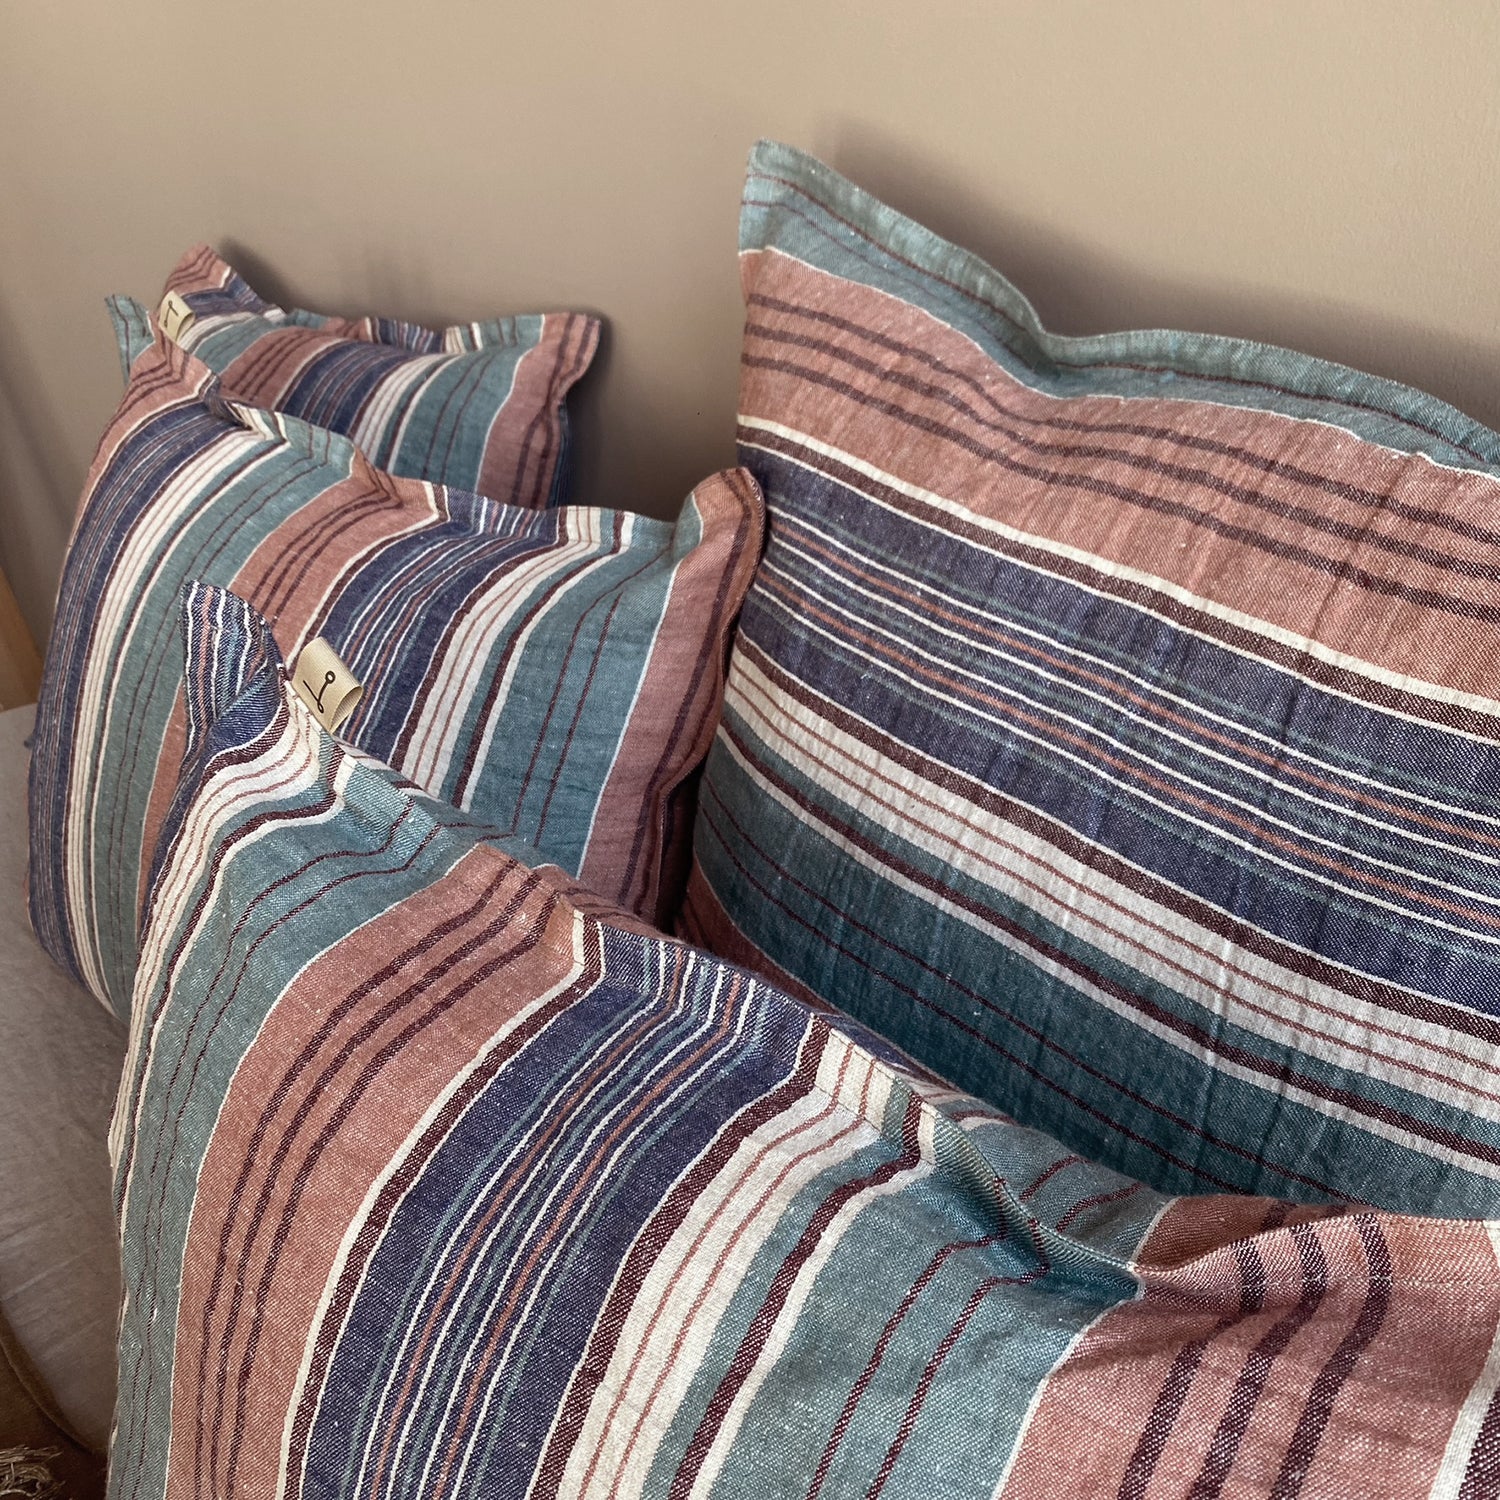 Detalle de los cojines de lino rayado en tonos verdes, azules y tierras.